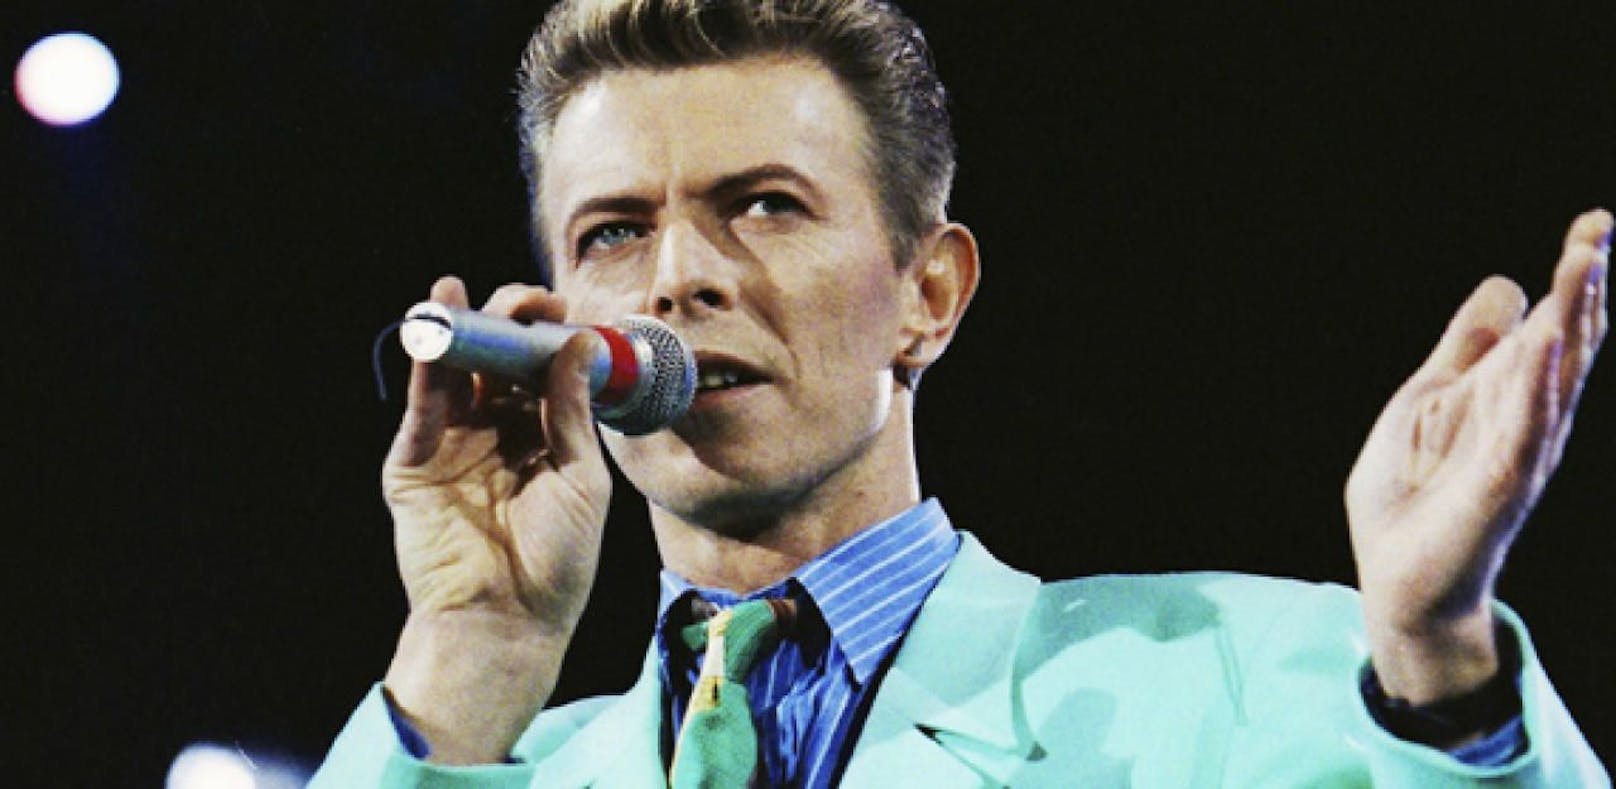 Aufnahme von David Bowie